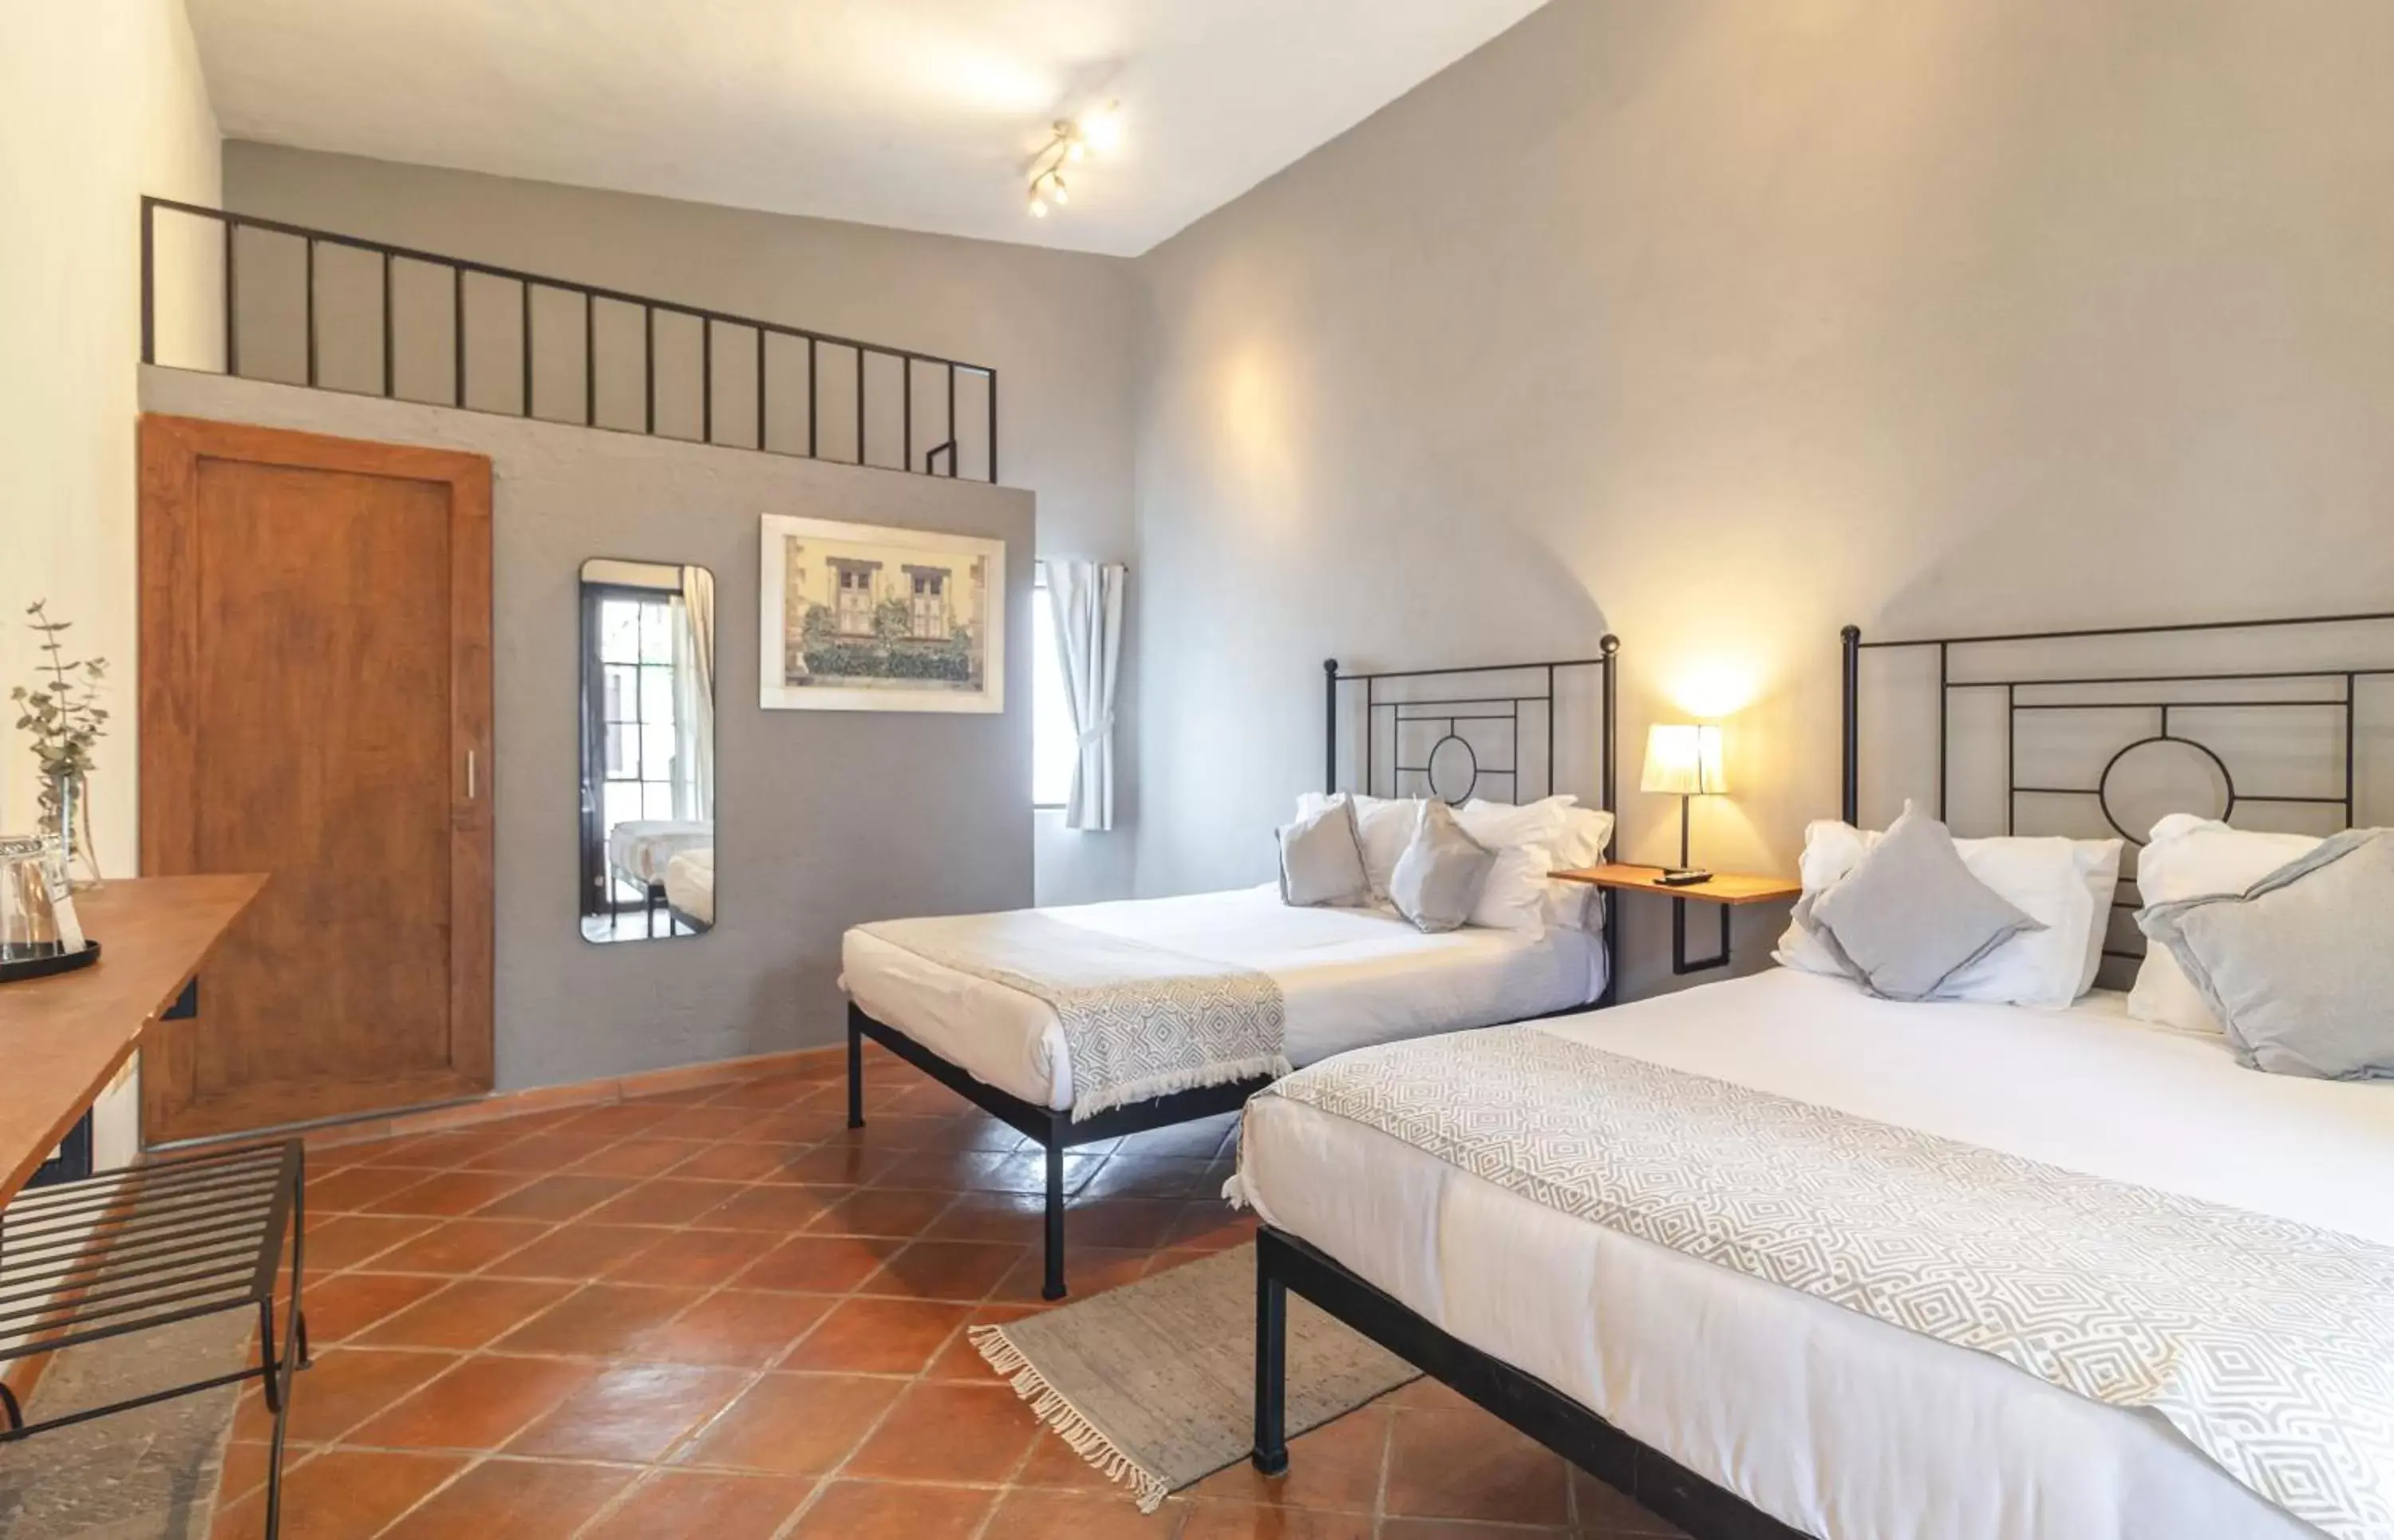 Bed in Casa Goyri San Miguel de Allende